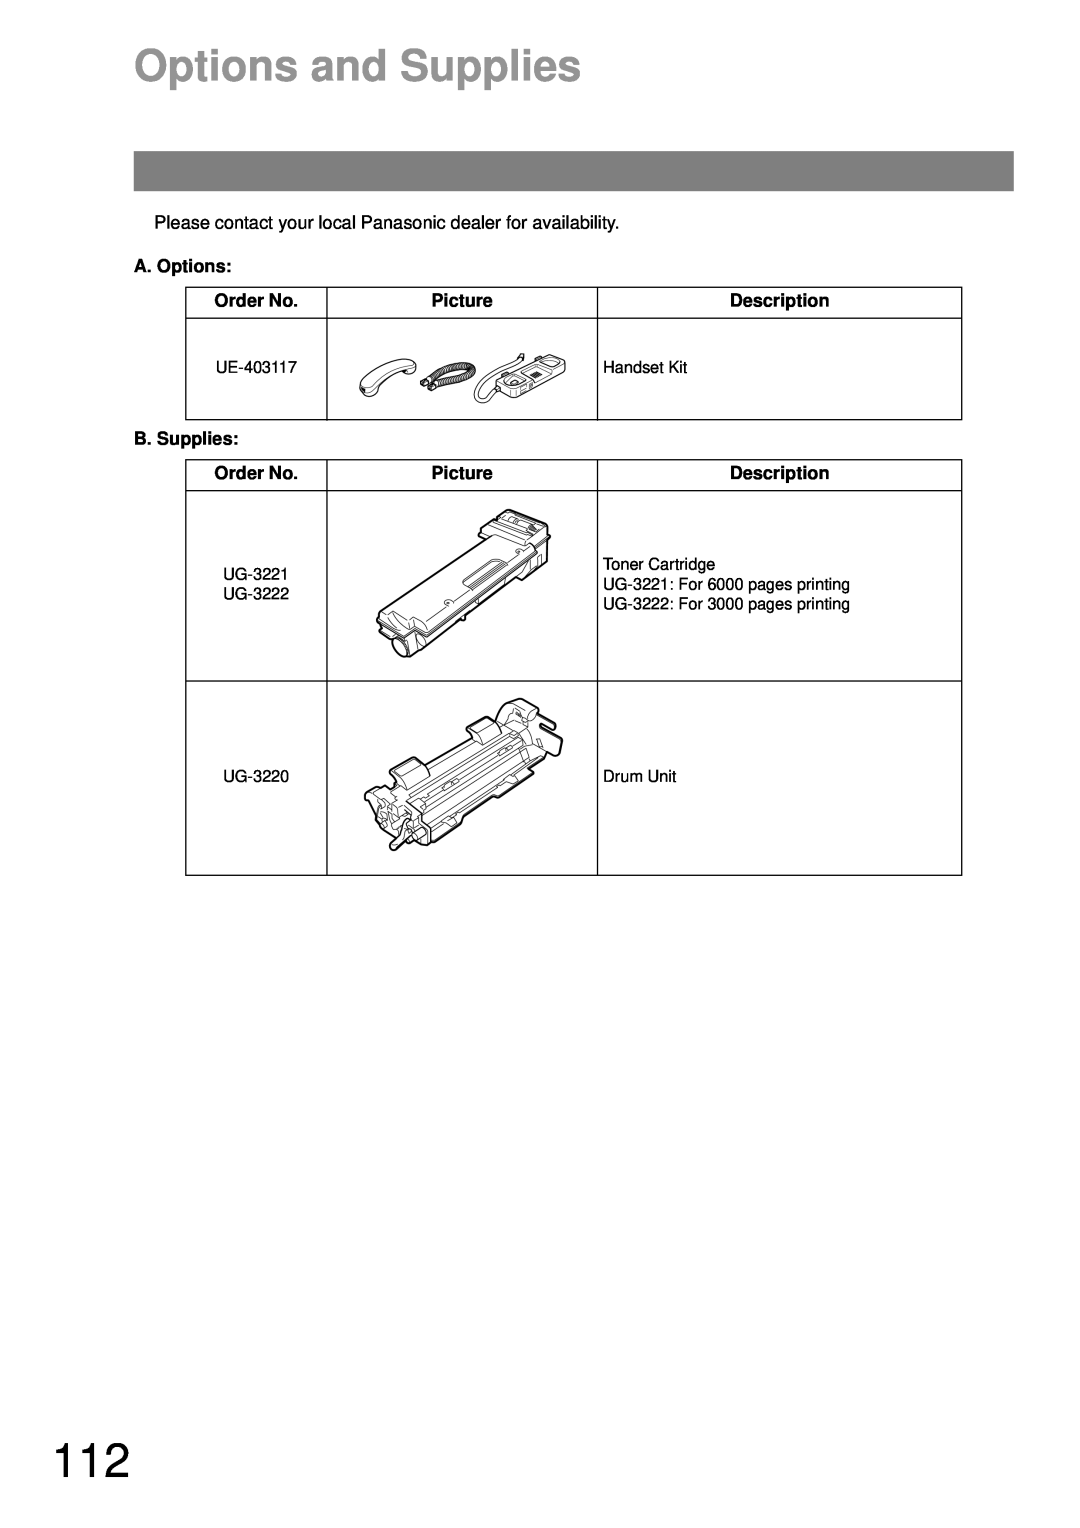 Castelle UF-490 appendix Options and Supplies, A. Options, Order No, Picture, Description, B. Supplies 